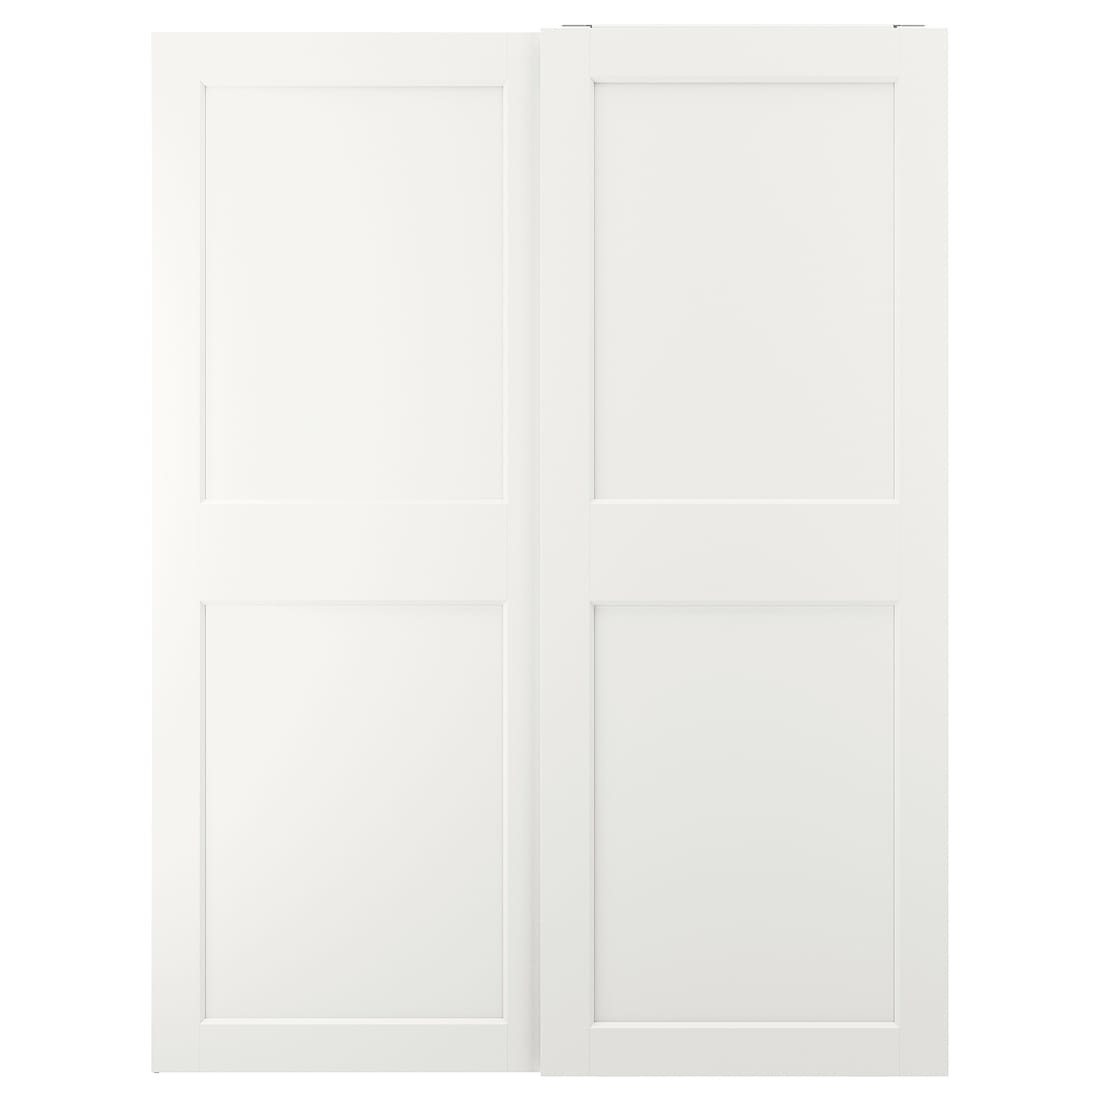 IKEA GRIMO ГРИМО Пара раздвижных дверей, белый, 150x201 см 20521527 205.215.27